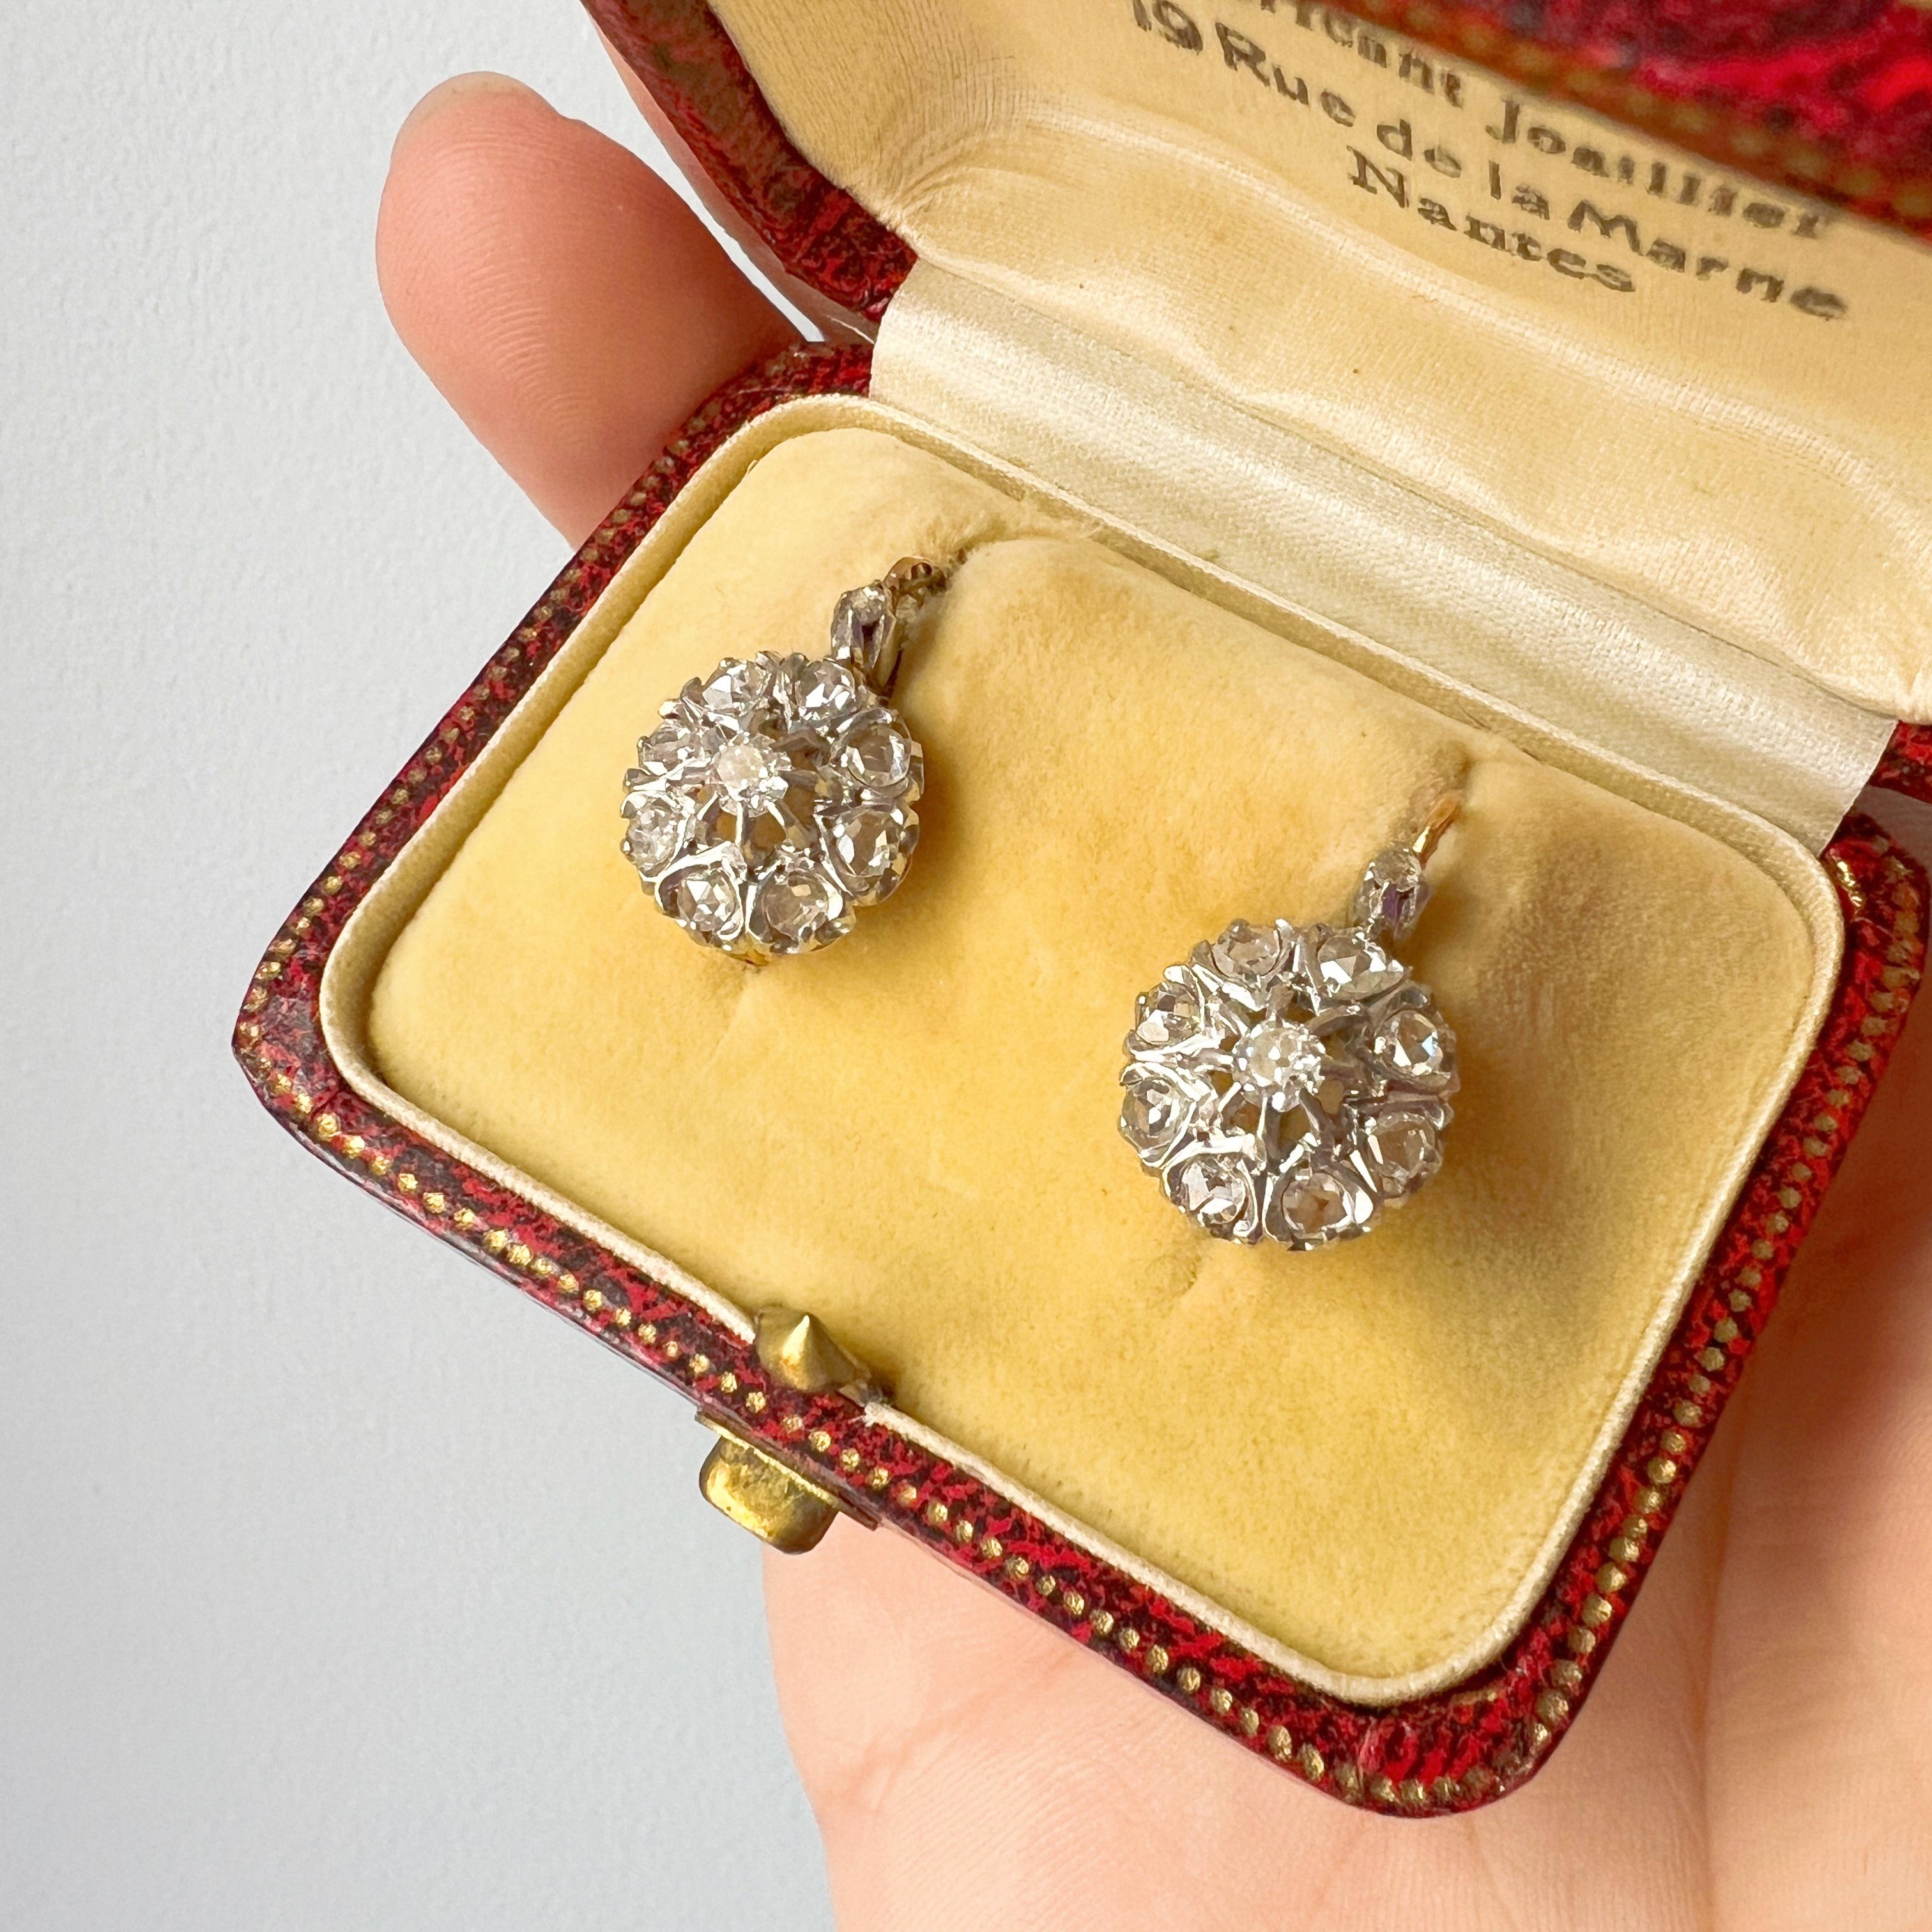 Zum Verkauf steht ein schönes Paar französischer Diamantohrringe mit Rosenschliff aus dem 19. 

Auf jeder Seite der Ohrringe gruppieren sich 8 rosafarbene Diamanten um einen zentralen runden Diamanten im Minenschliff und einen kleineren rosafarbenen